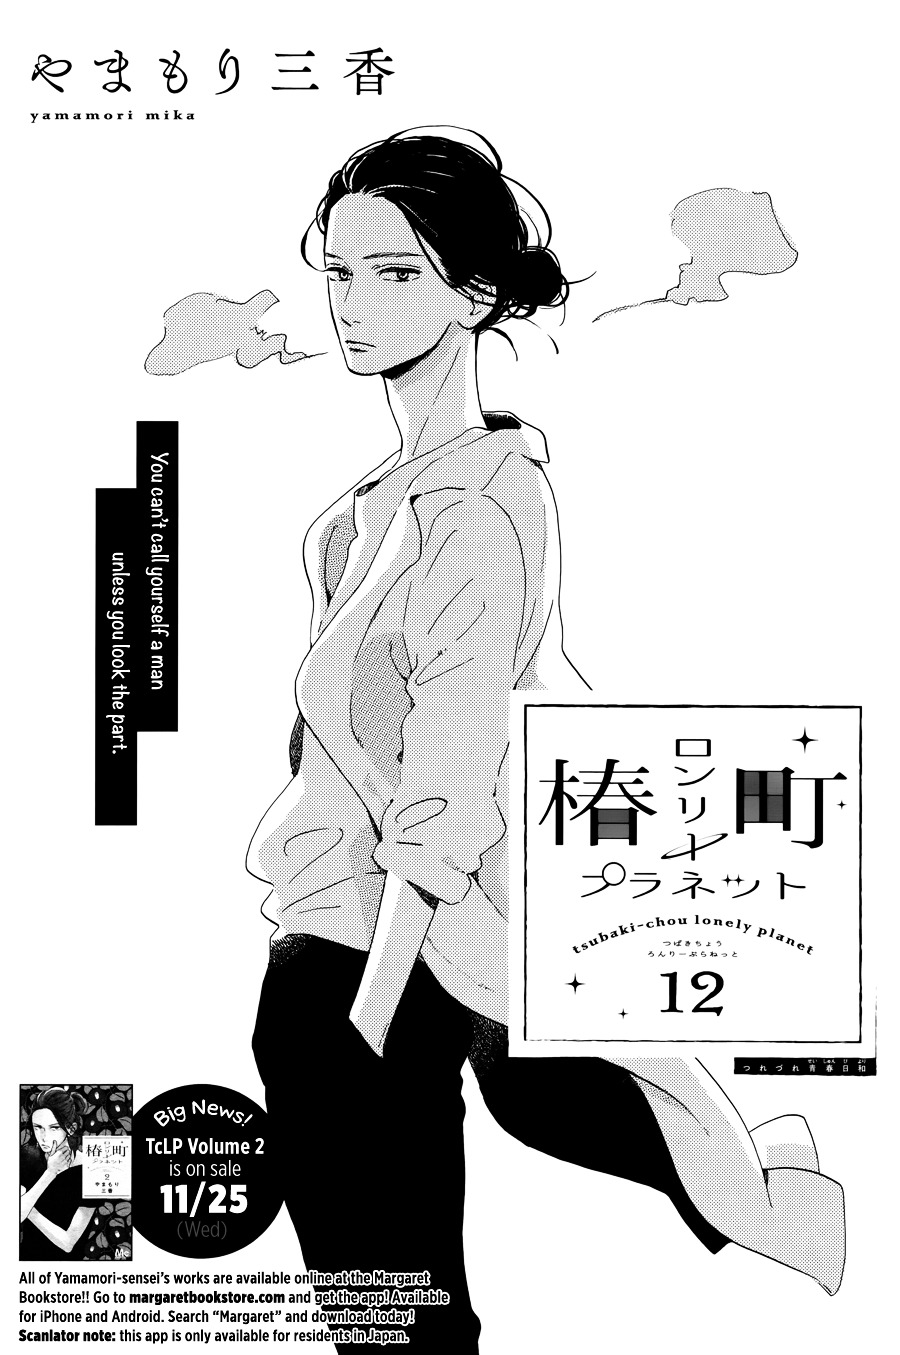 Tsubaki-Chou Lonely Planet - Page 2